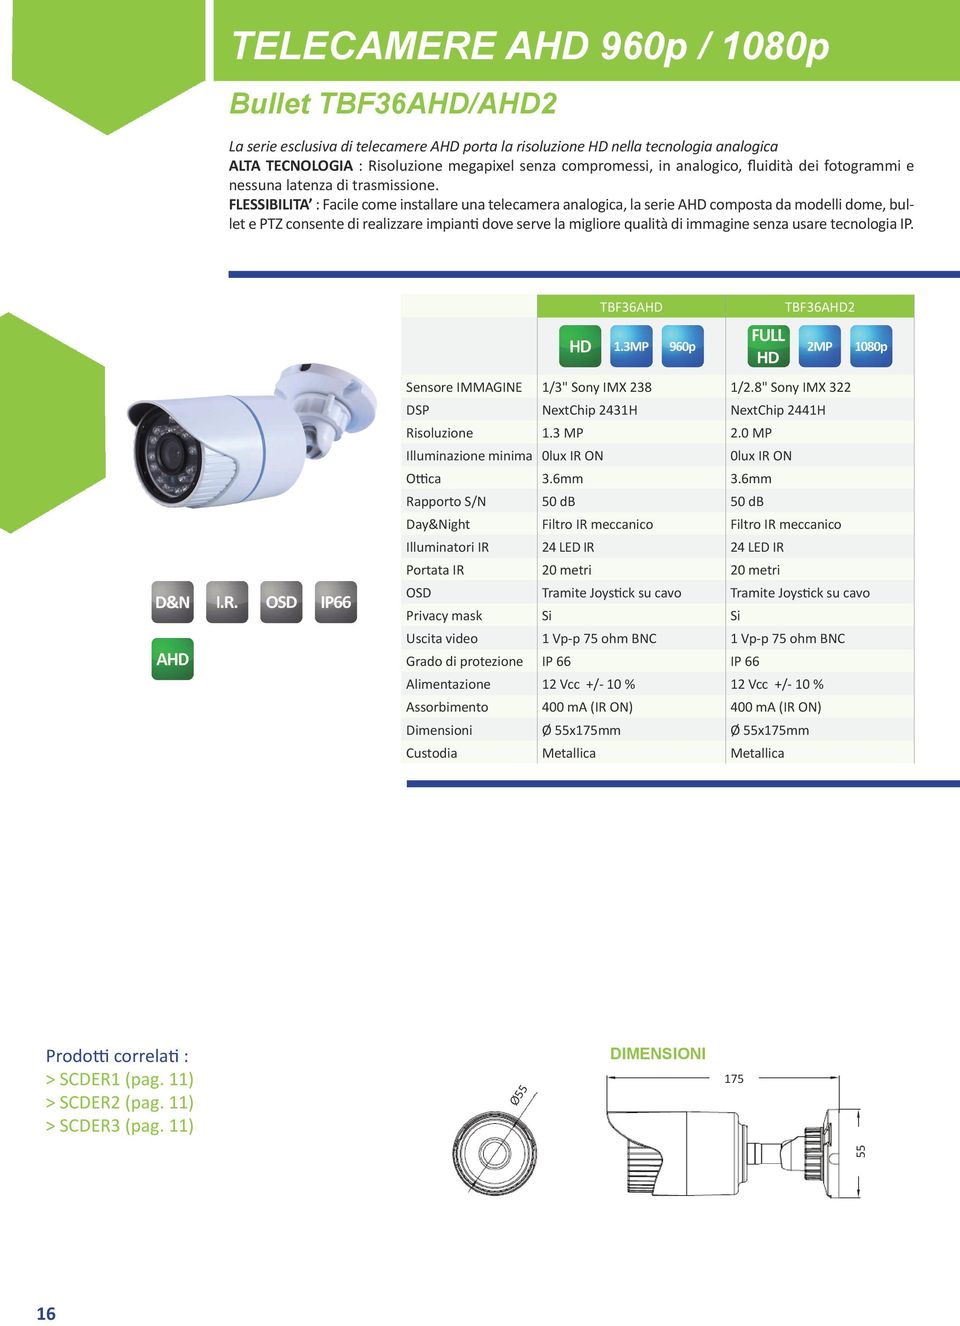 FLESSIBILITA : Facile come installare una telecamera analogica, la serie AHD composta da modelli dome, bullet e PTZ consente di realizzare impianti dove serve la migliore qualità di immagine senza